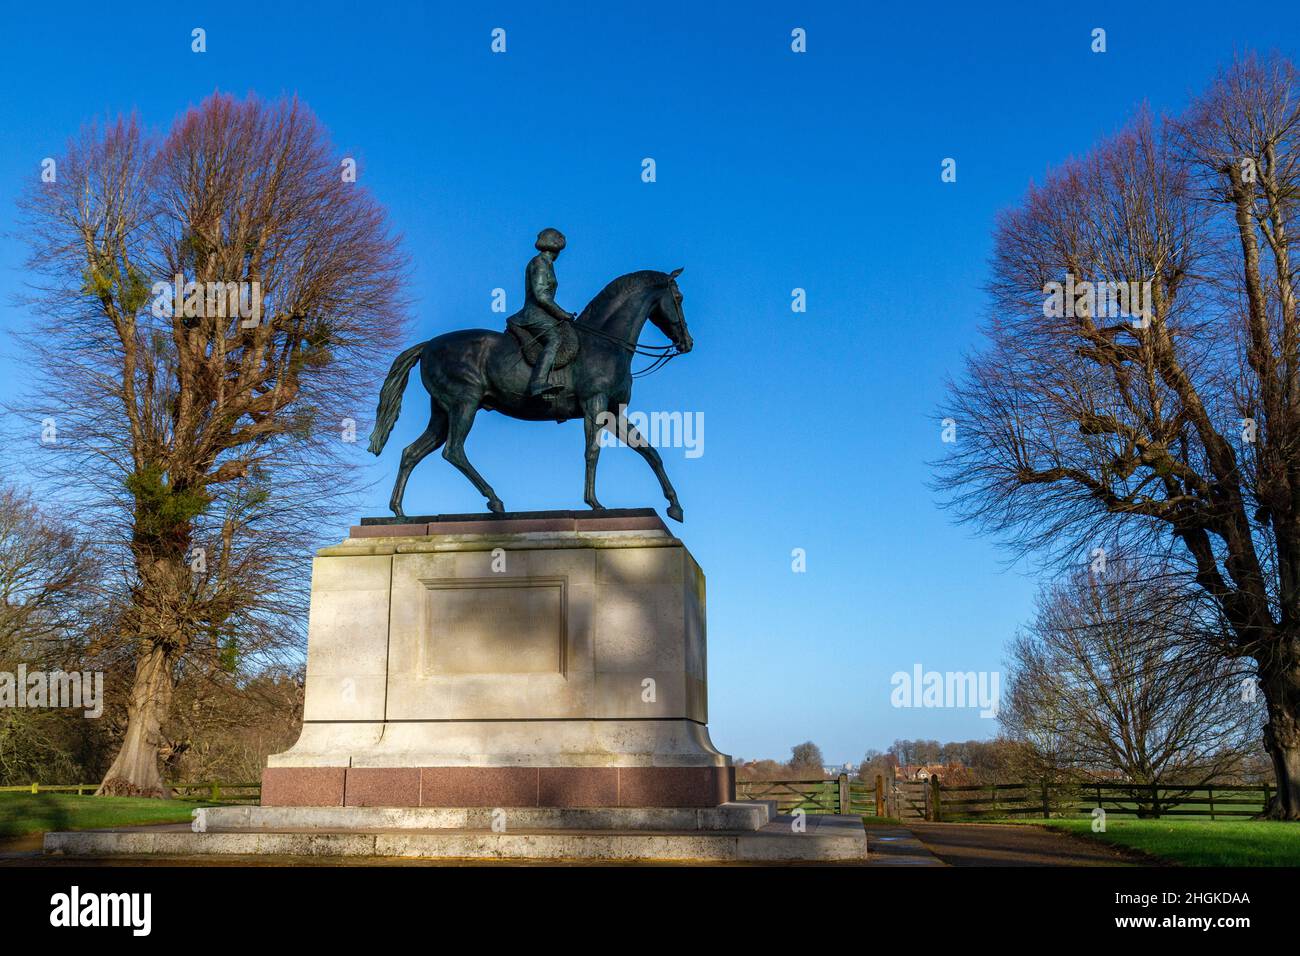 Statua equestre di Elisabetta II che celebra il suo Giubileo d'Oro nel 2003, Windsor Great Park vicino a Windsor, Berkshire, Regno Unito. Foto Stock